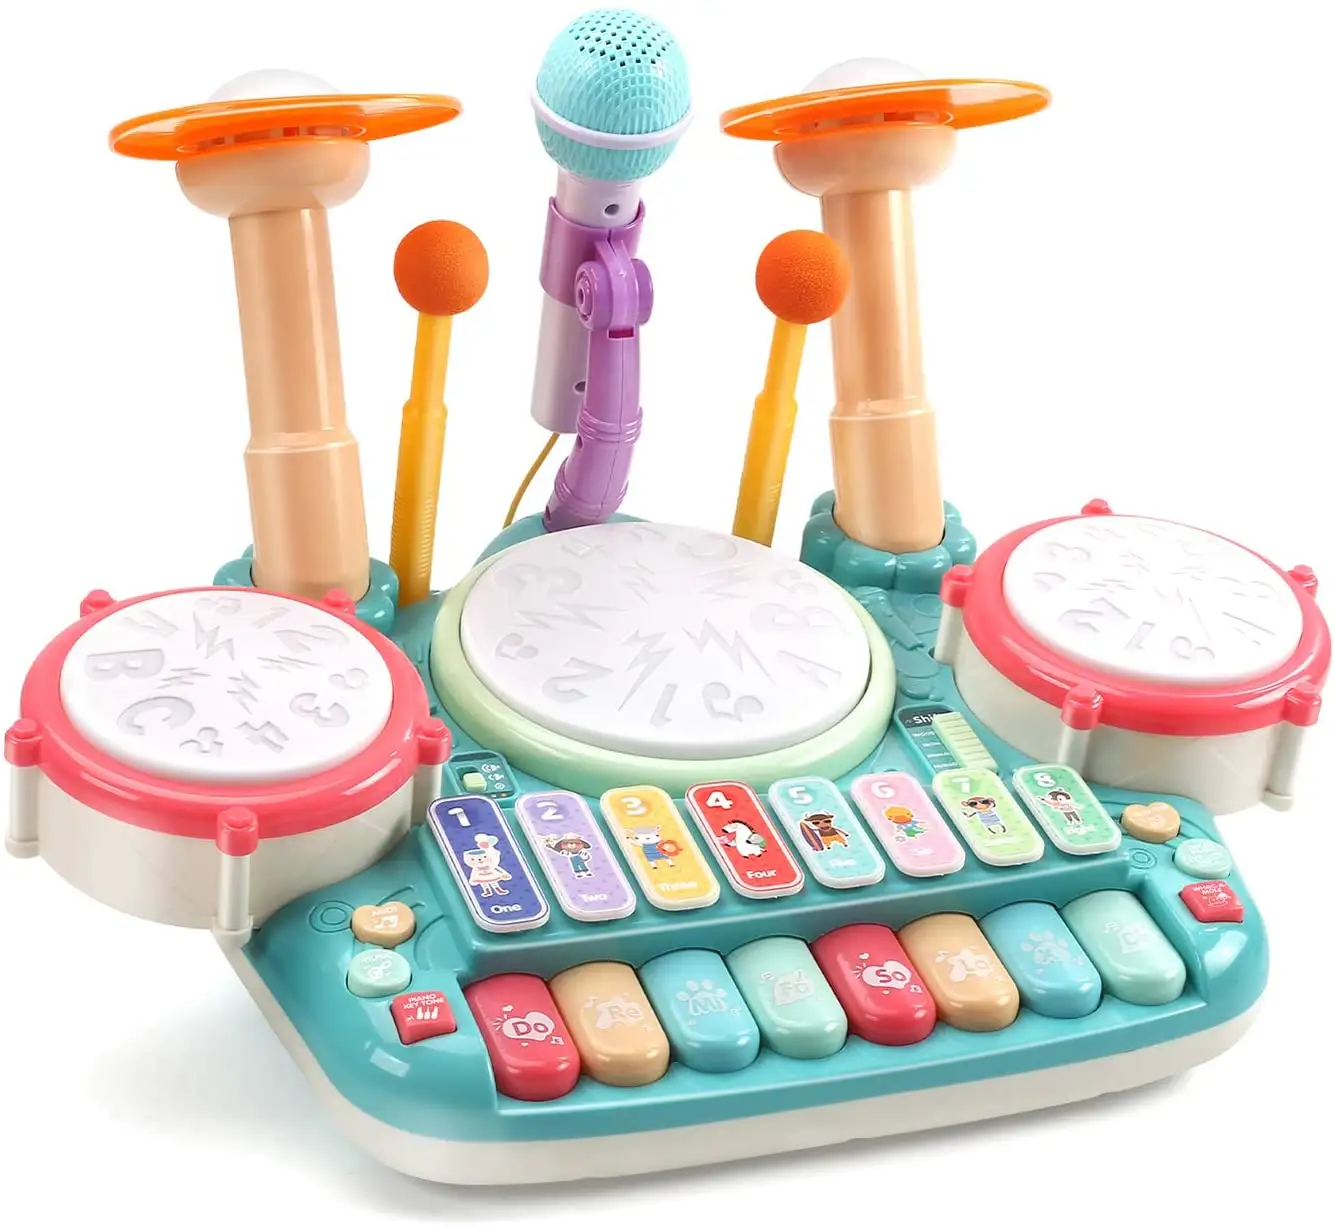 5 En 1 instrumentos musicales juguetes 2 micrófono de aprendizaje de juguete teclado xilófono tambor juguetes con luz niños Piano Electrónico